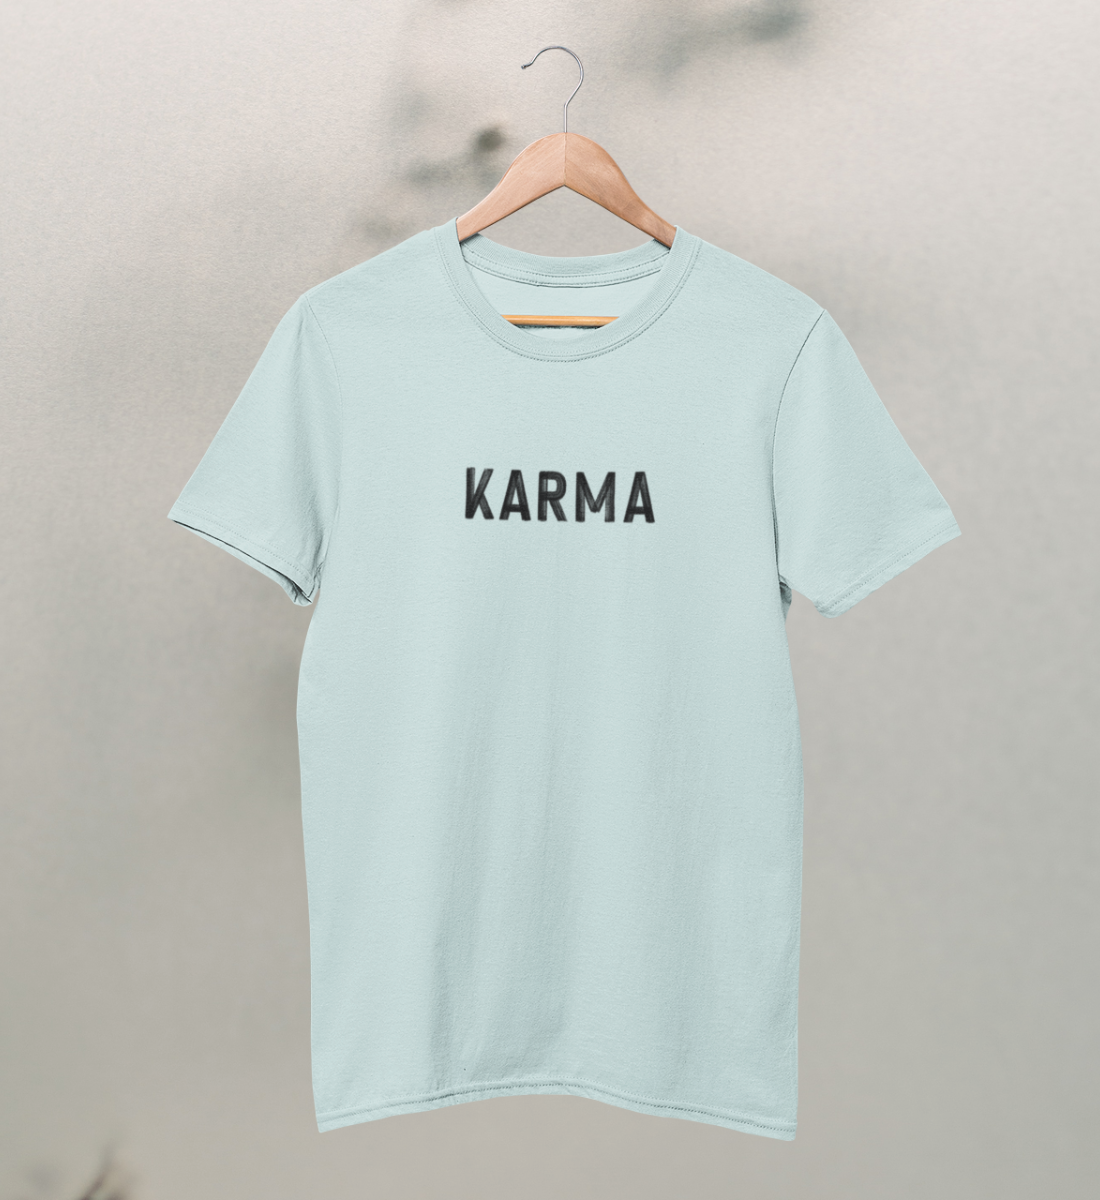 karma l t-shirt kinder bio-baumwolle hellblau l yoga mode kinder l bio yoga kleidung l ökologische mode l ethischer konsum dank natürlichen materialien